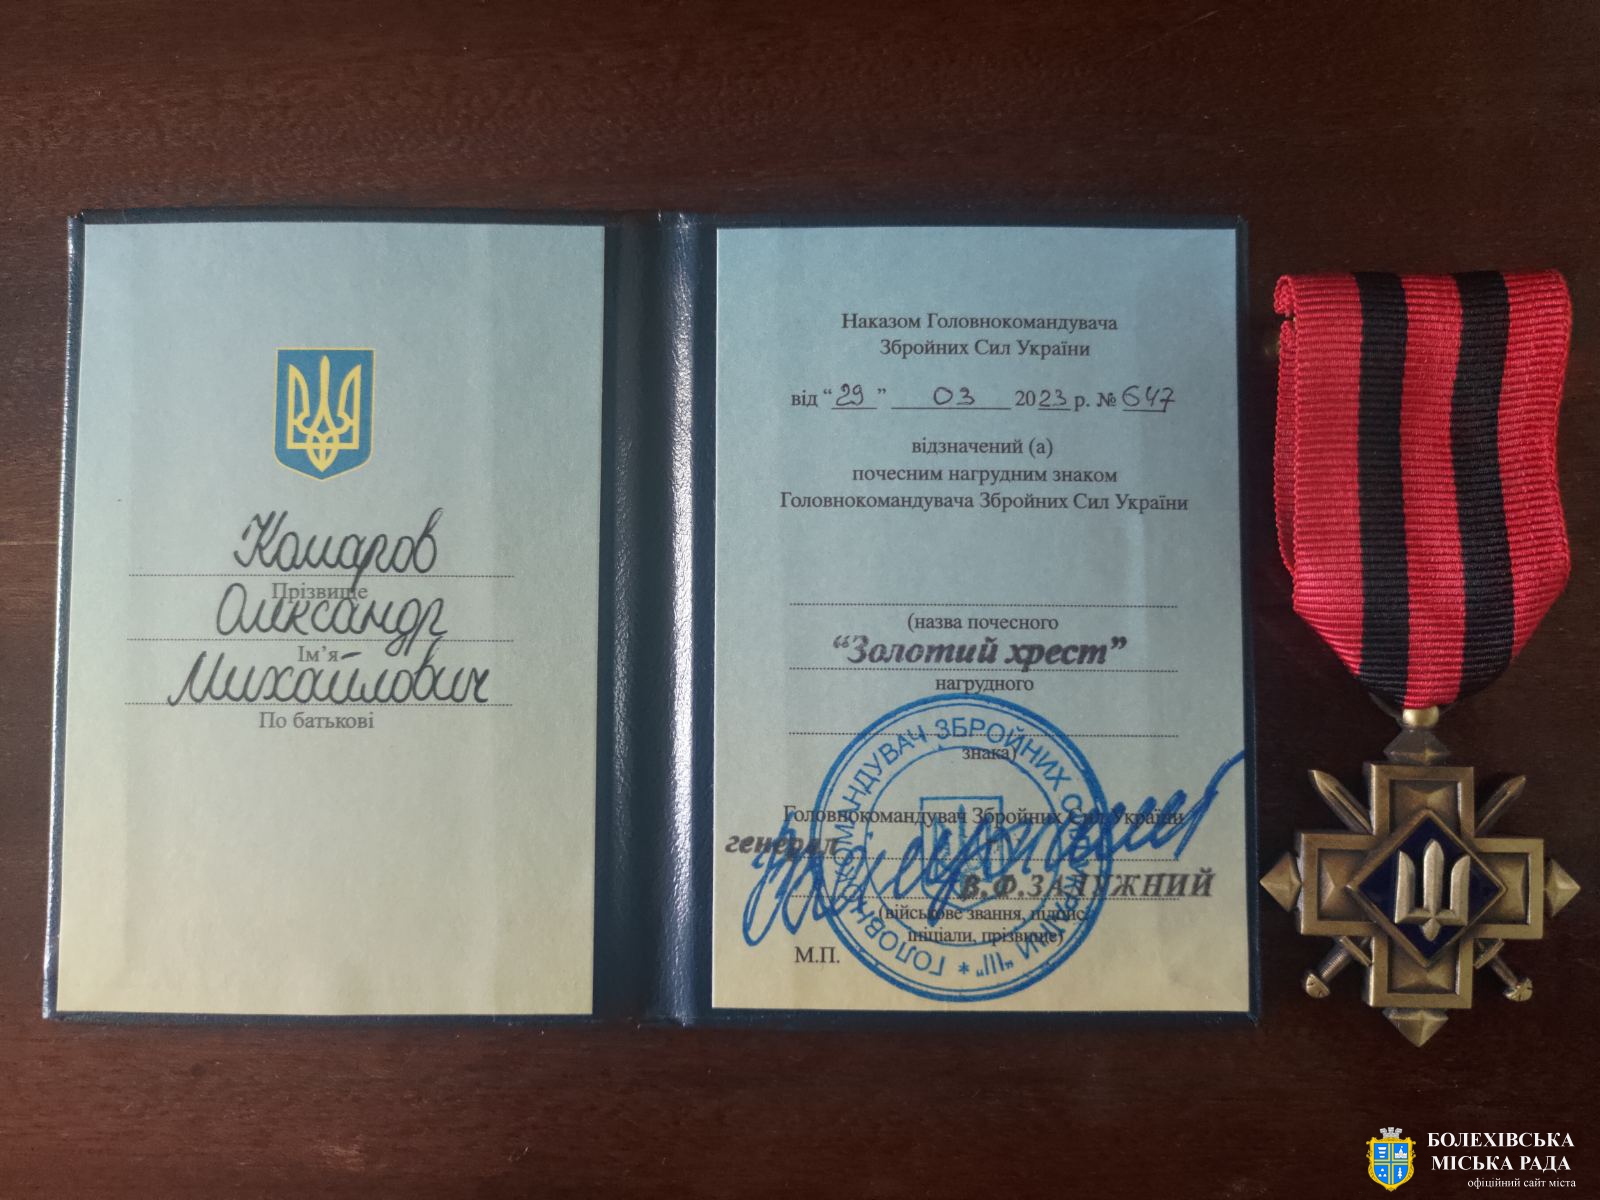 Воїн з Болехівщини Олександр Комаров отримав почесний нагрудний знак «Золотий хрест»